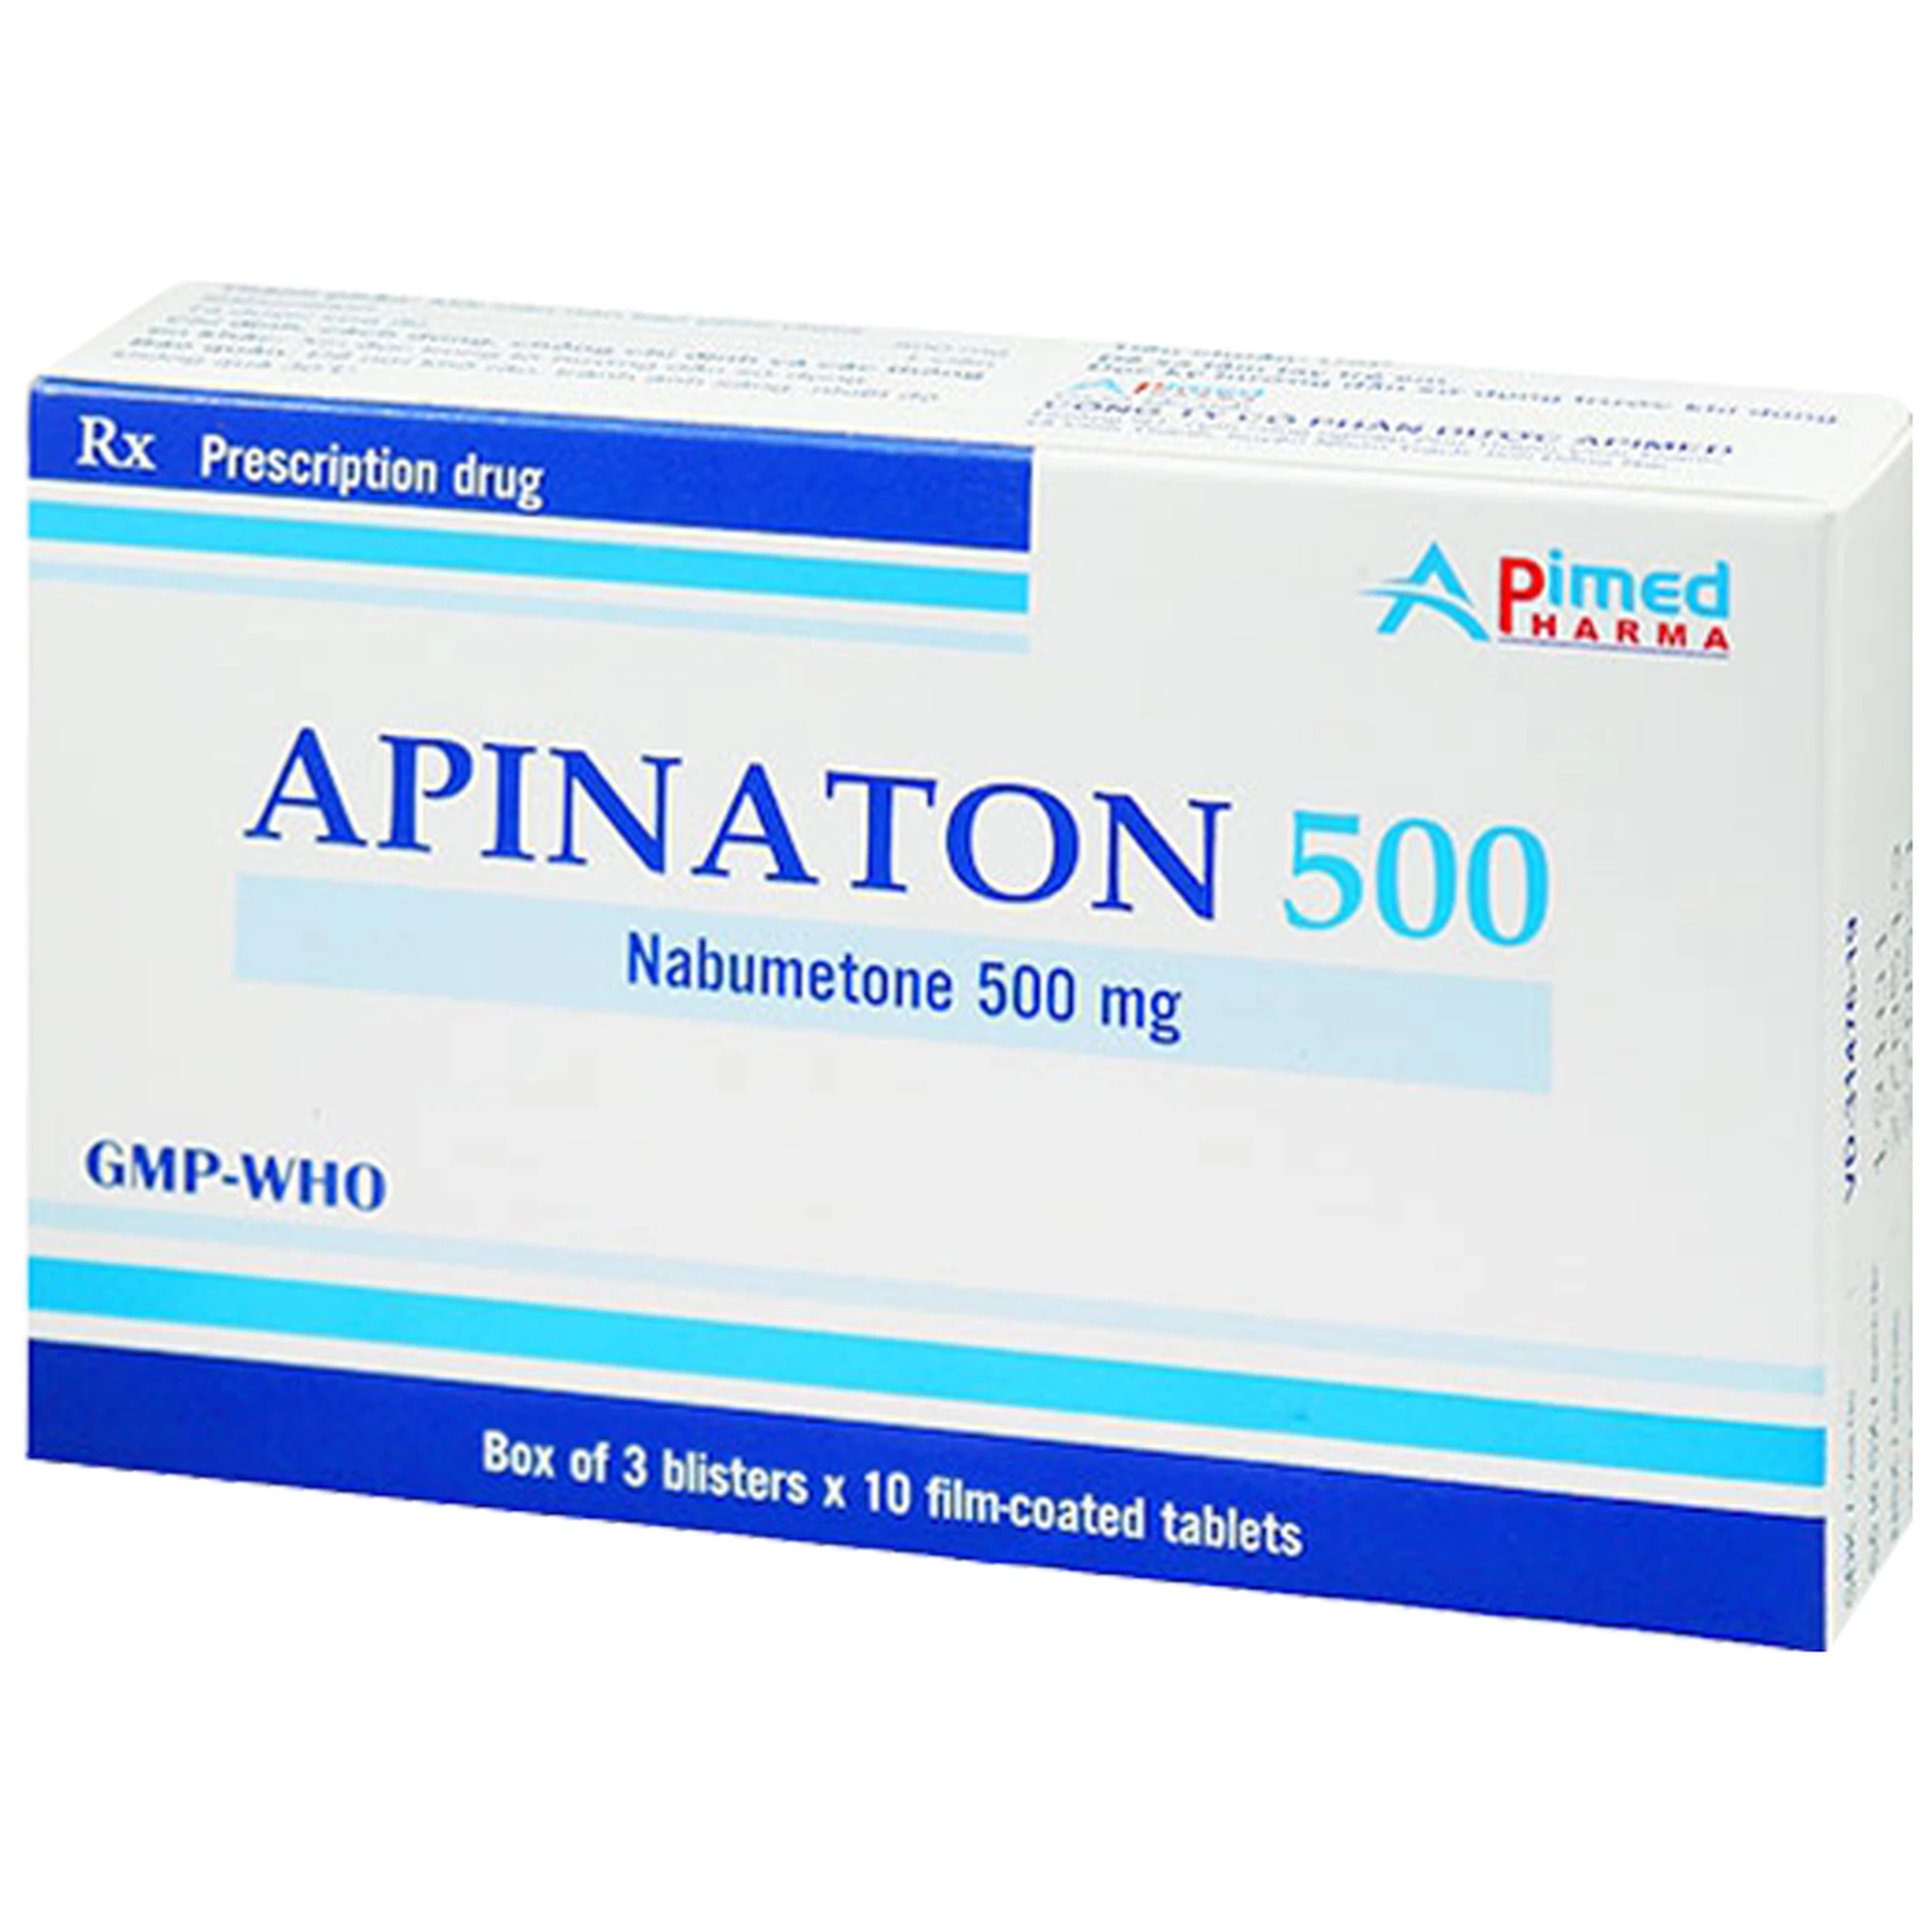 Thuốc Apinaton 500 Apimed điều trị viêm xương khớp, viêm khớp dạng thấp (3 vỉ x 10 viên)